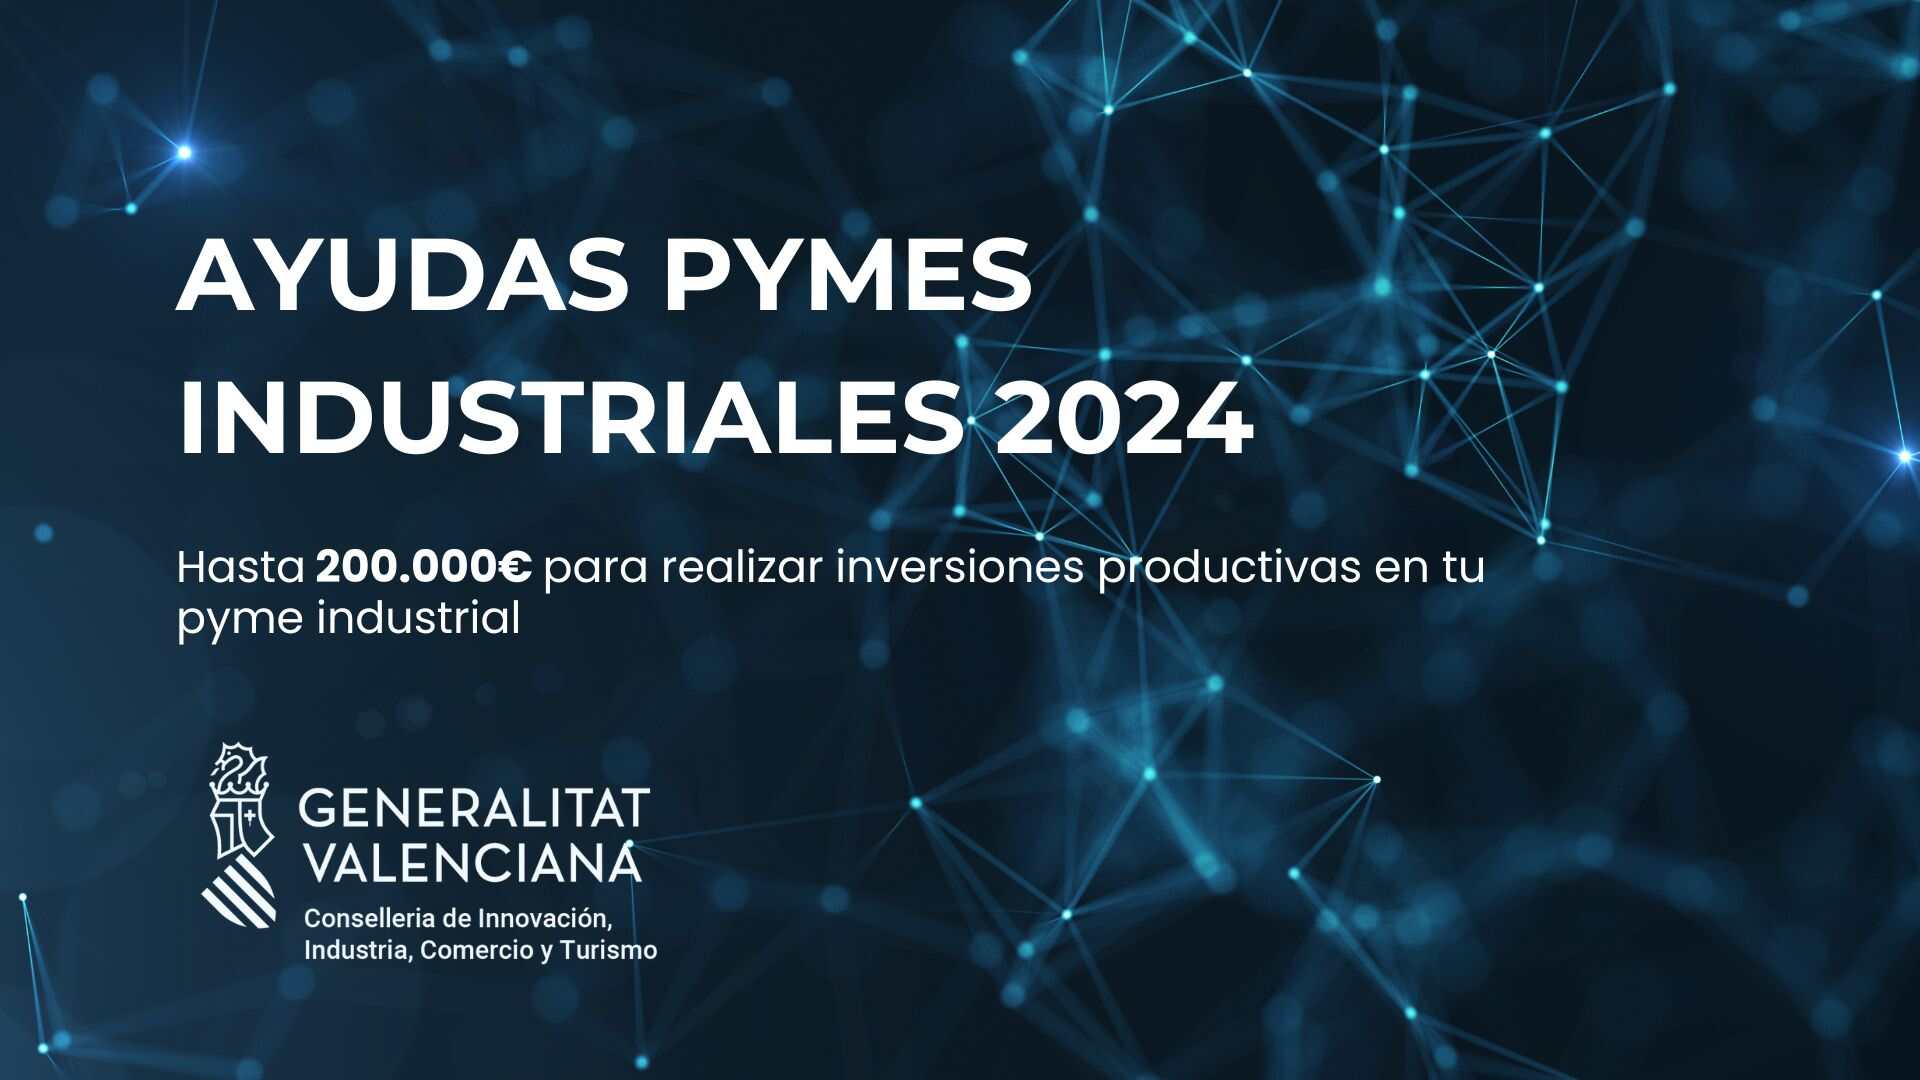 Ayudas pymes industriales 2024. Hasta 200.000 € para realizar inversiones productivas en tu pyme industrial